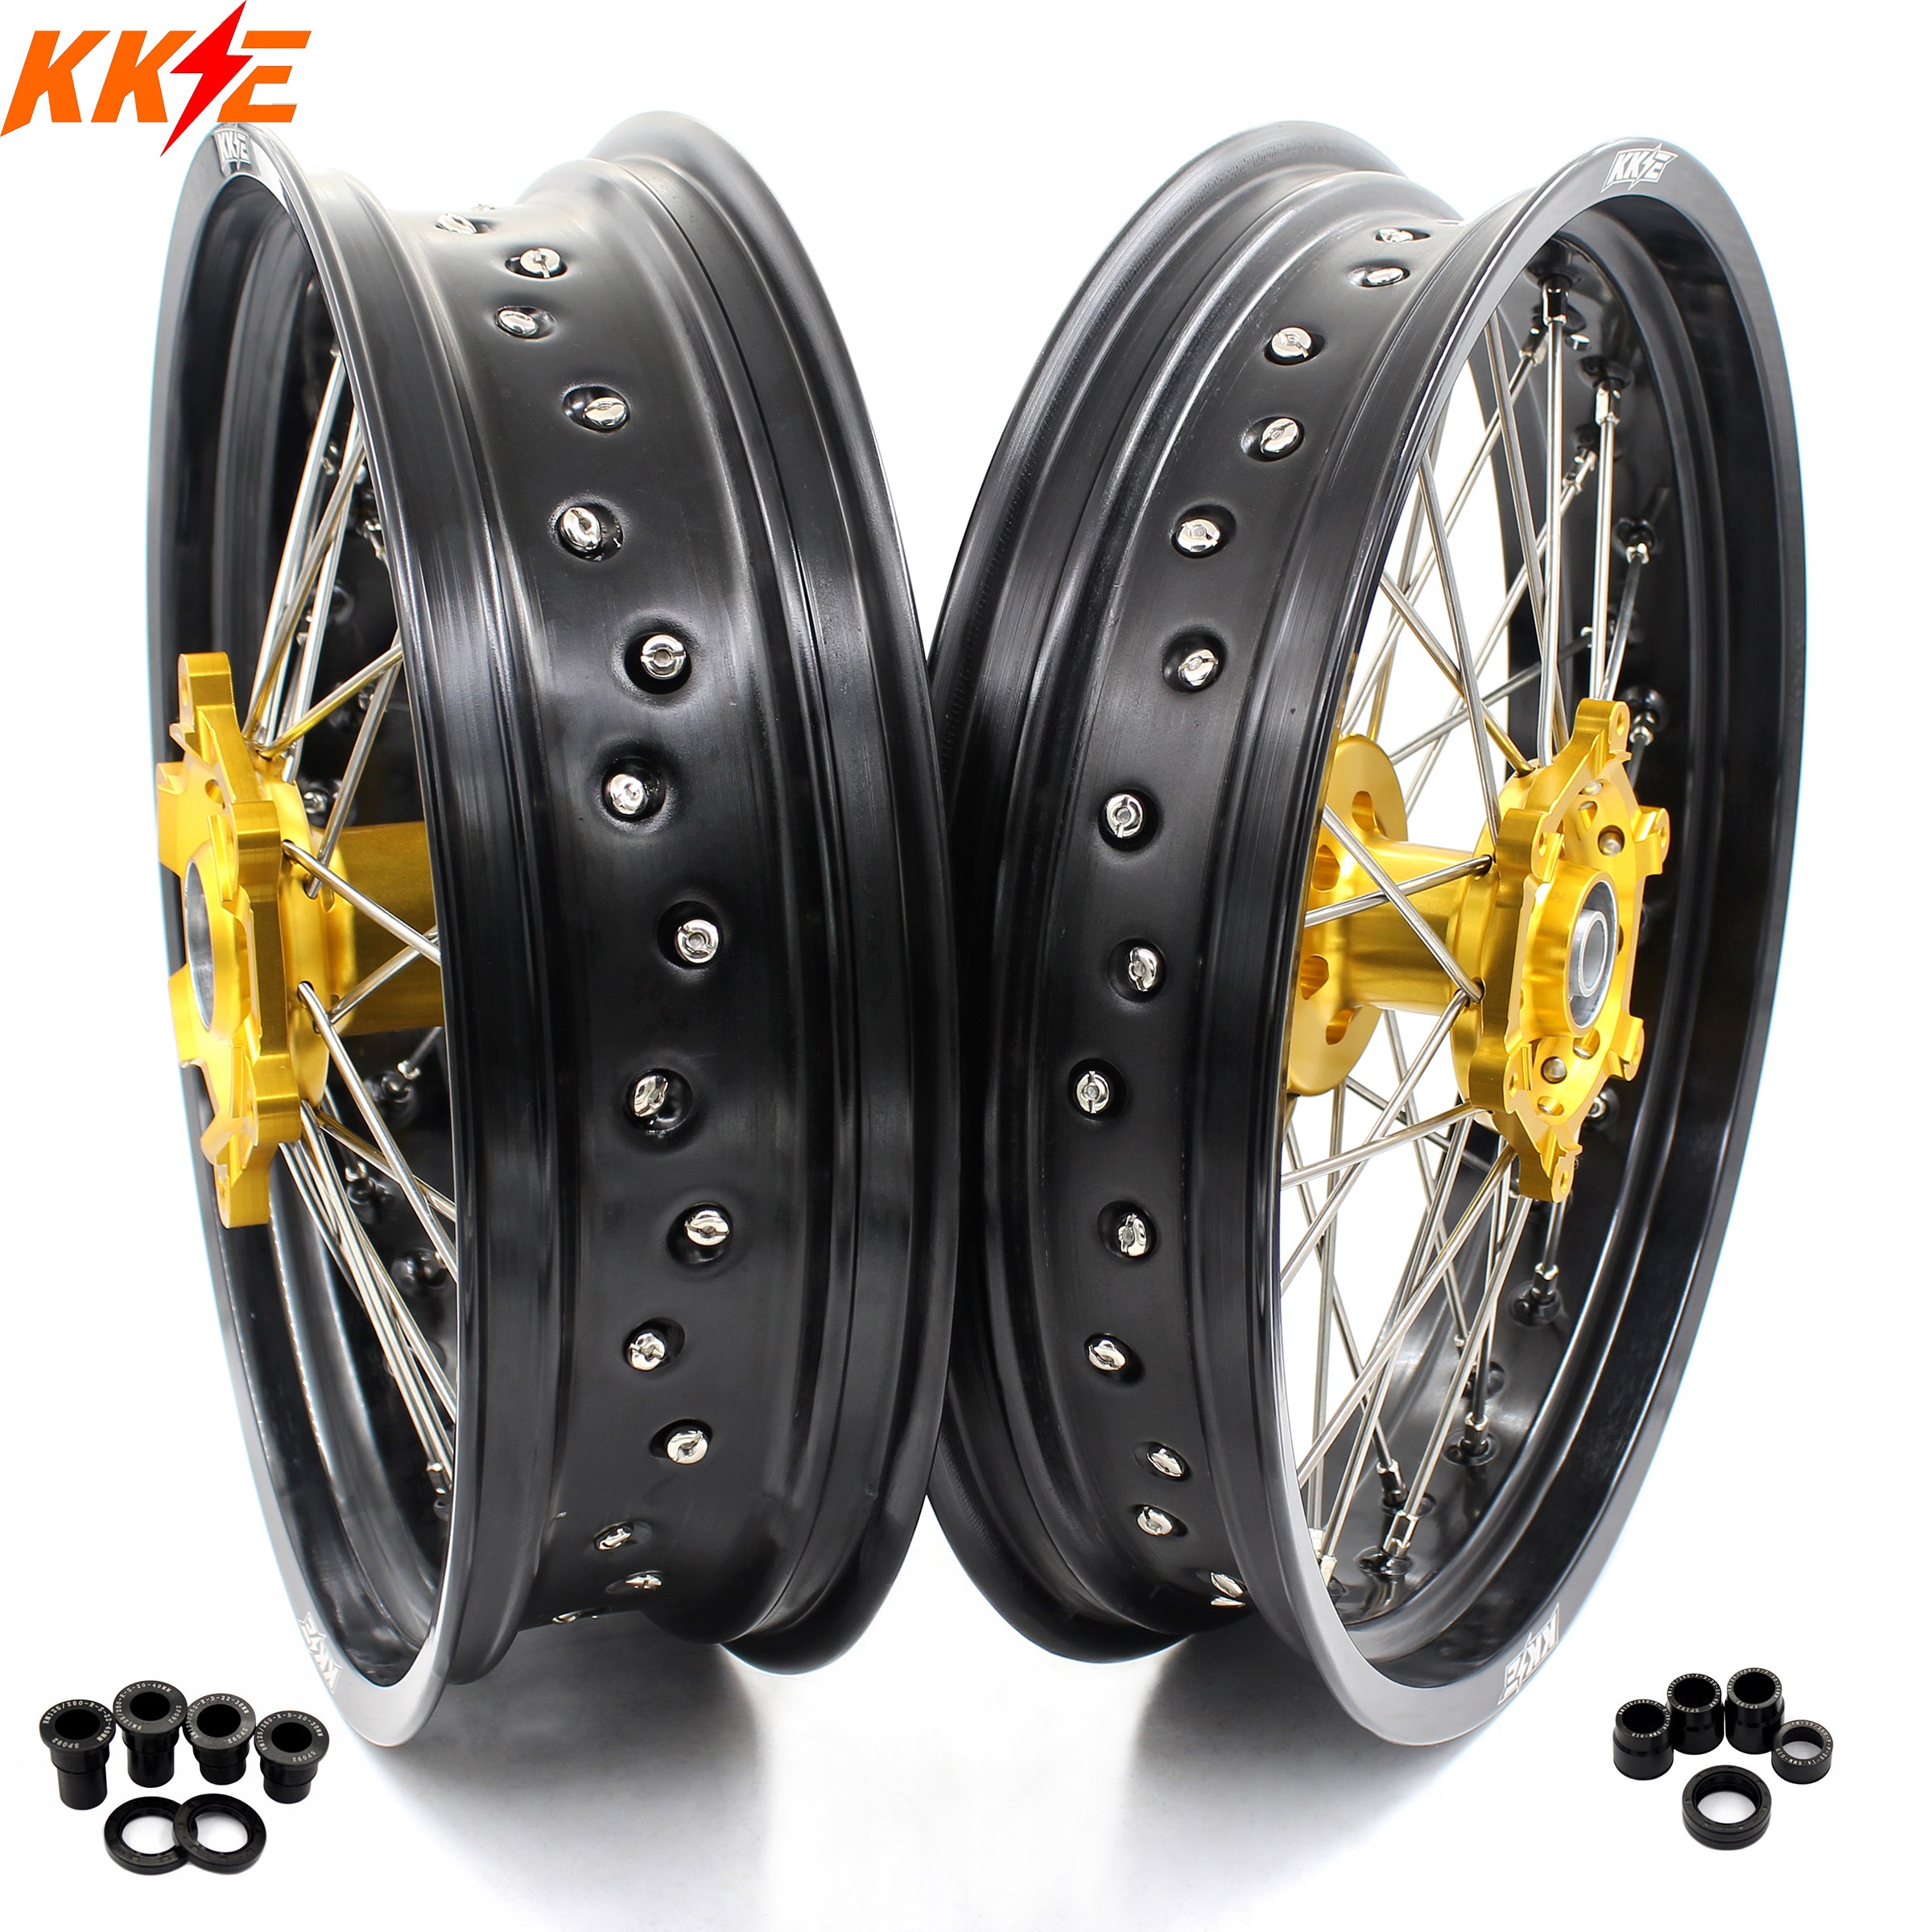 SM Wheels For RM Series – KKE Racing